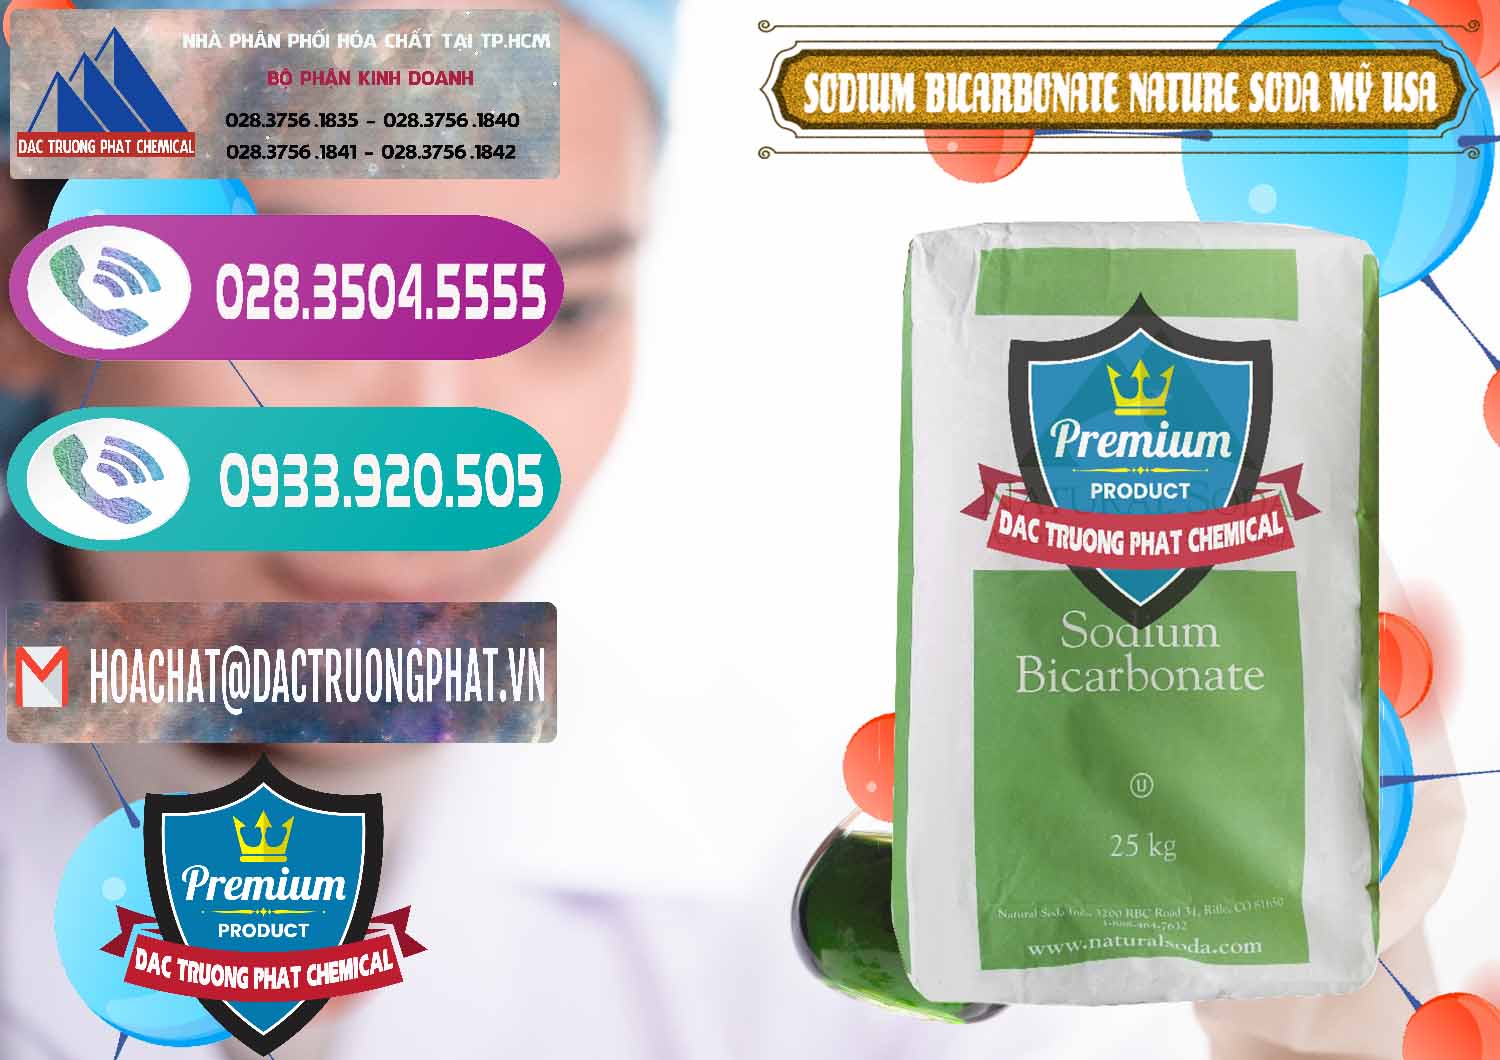 Đơn vị chuyên cung cấp - bán Sodium Bicarbonate – Bicar NaHCO3 Food Grade Nature Soda Mỹ USA - 0256 - Đơn vị nhập khẩu _ phân phối hóa chất tại TP.HCM - hoachatxulynuoc.com